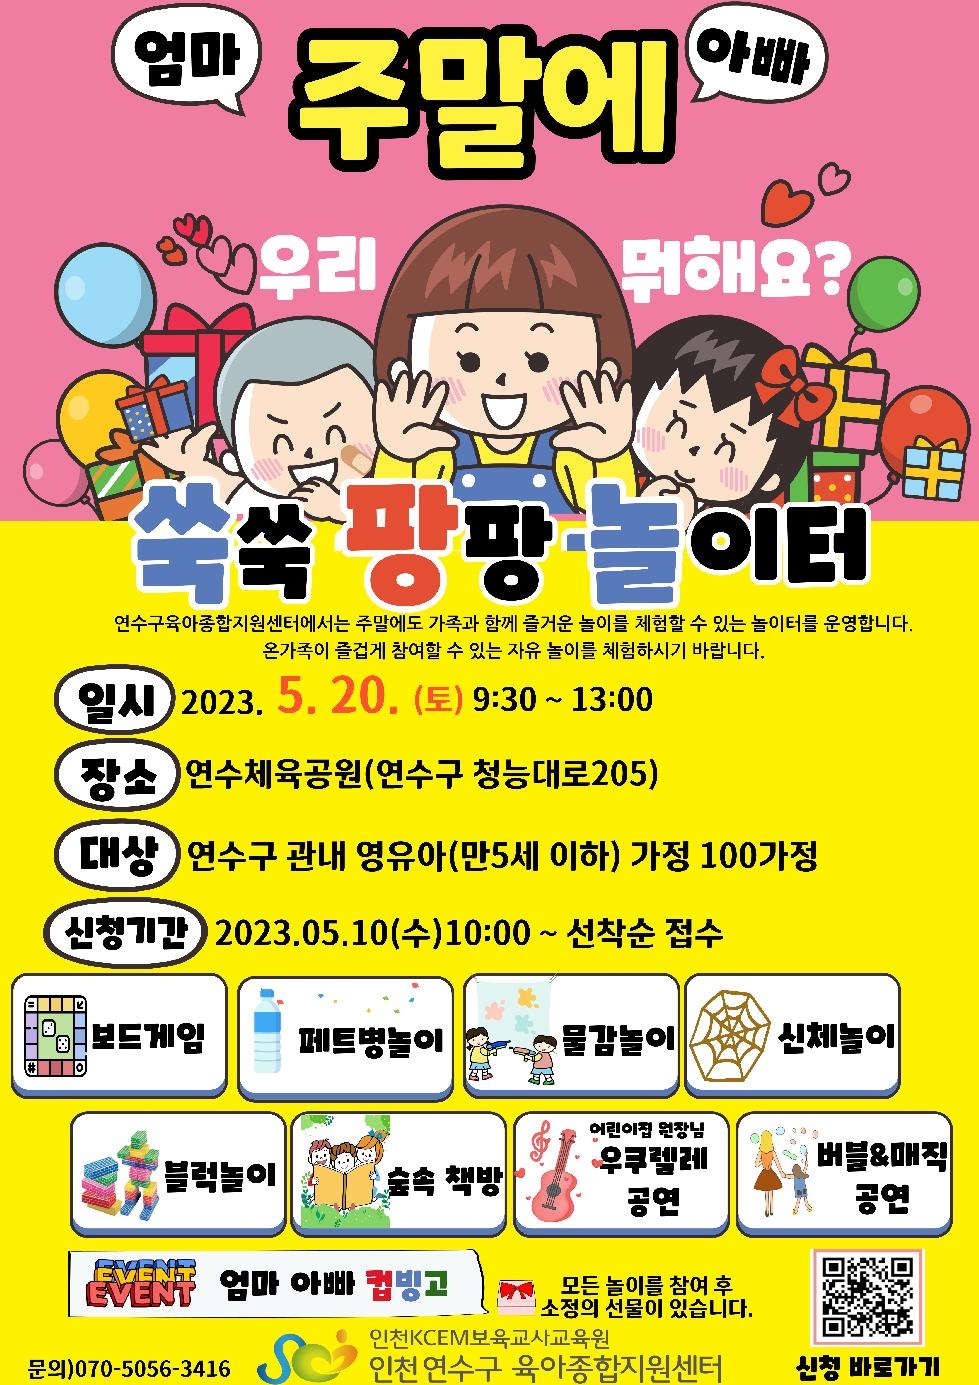 인천 연수구육아종합지원센터, 세계 놀이의 날 주간 행사